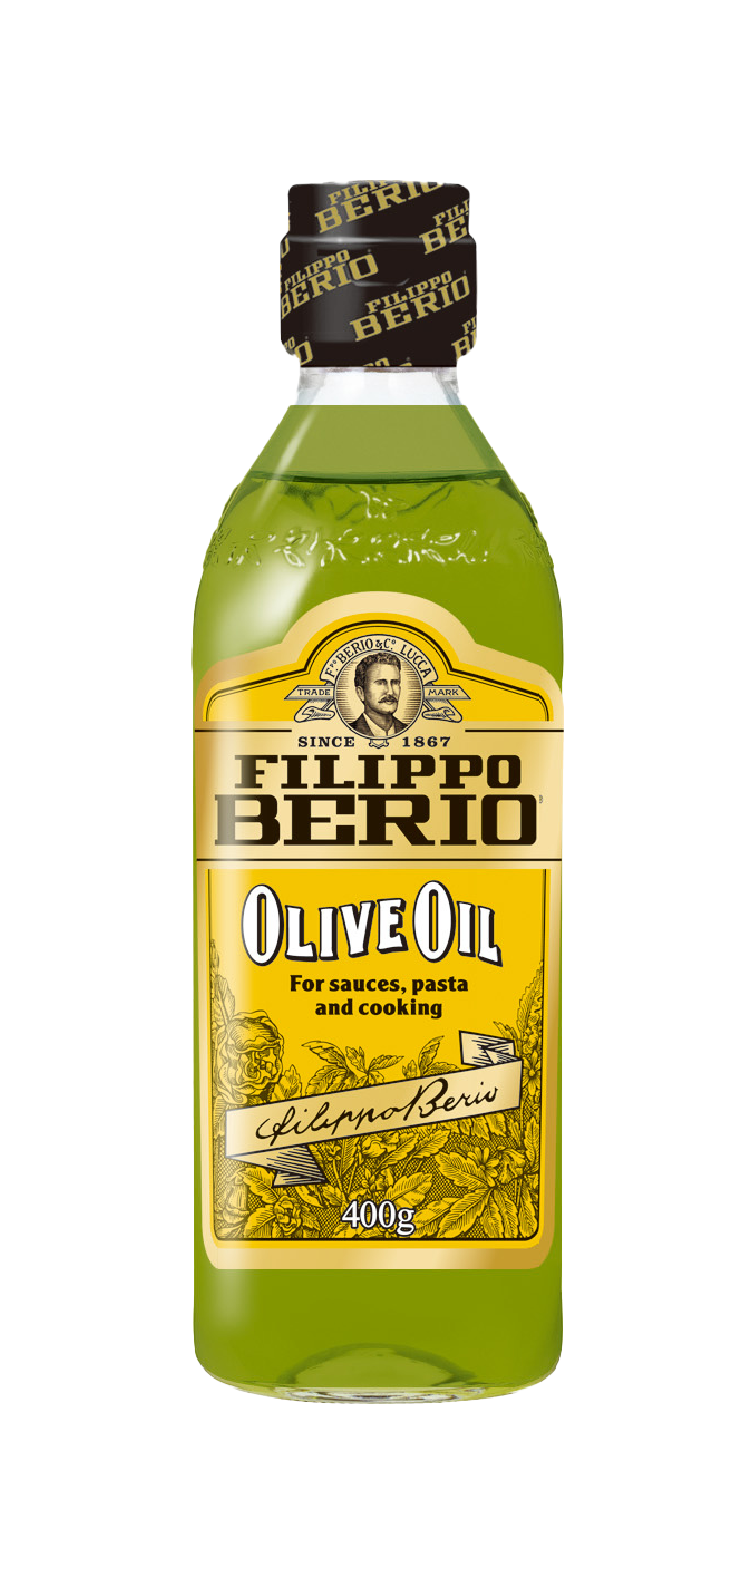 「FILIPPO BERIO オリーブオイル」400g瓶